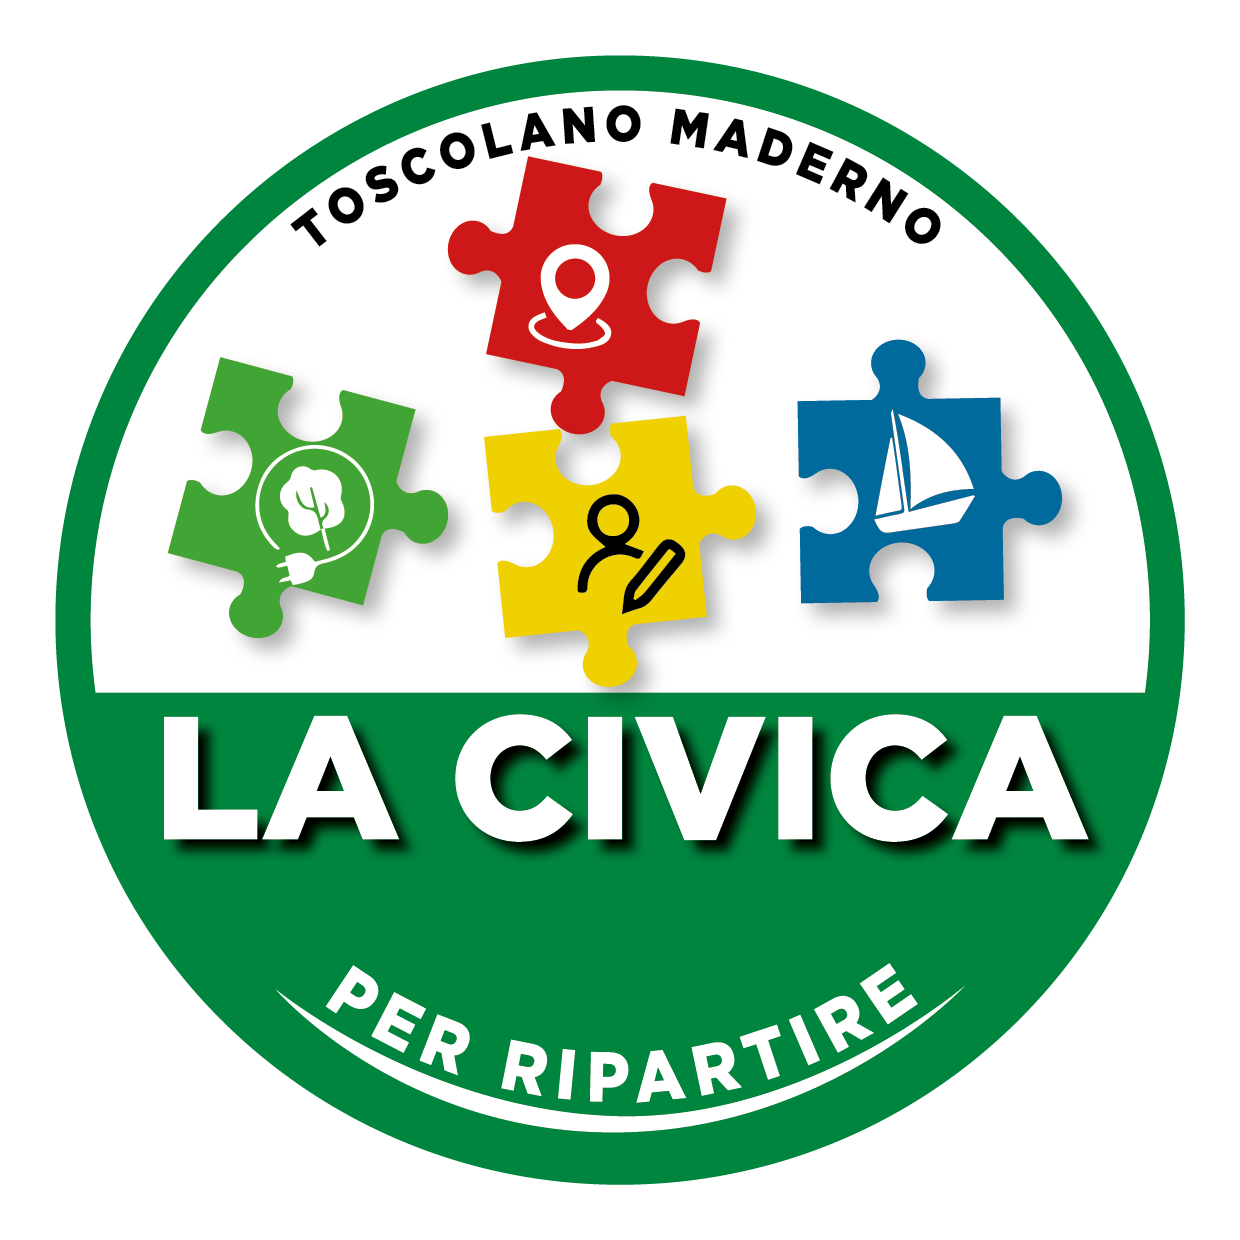 La_Civica_official_green